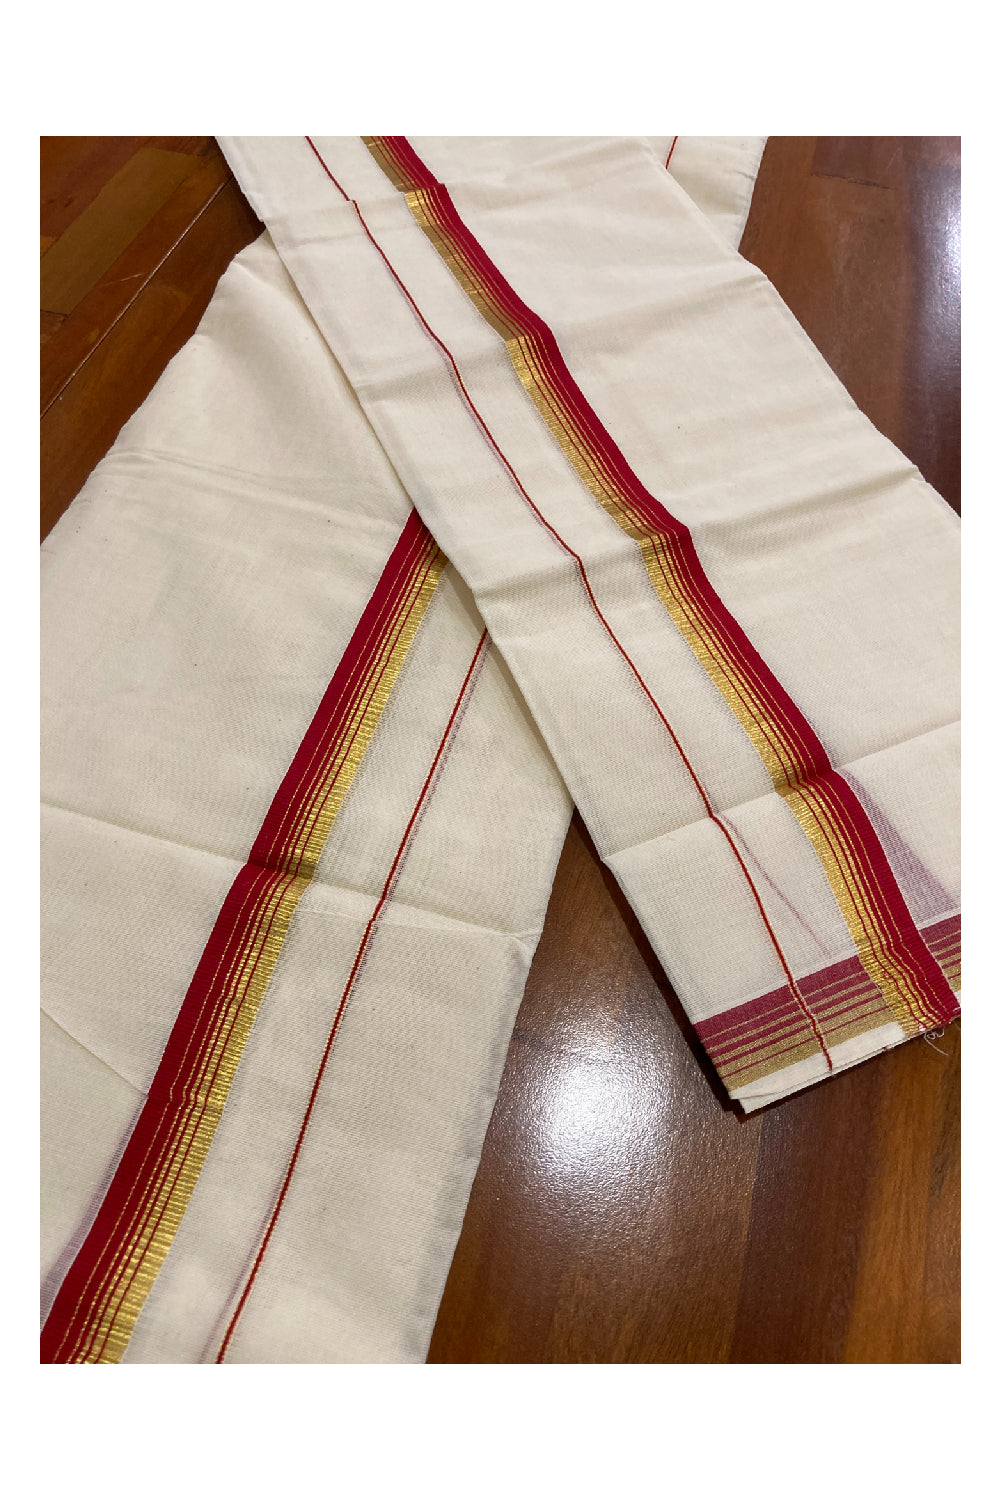 Kerala Cotton Mundum Neriyathum Double (Set Mundu) with Red and Kasavu Border